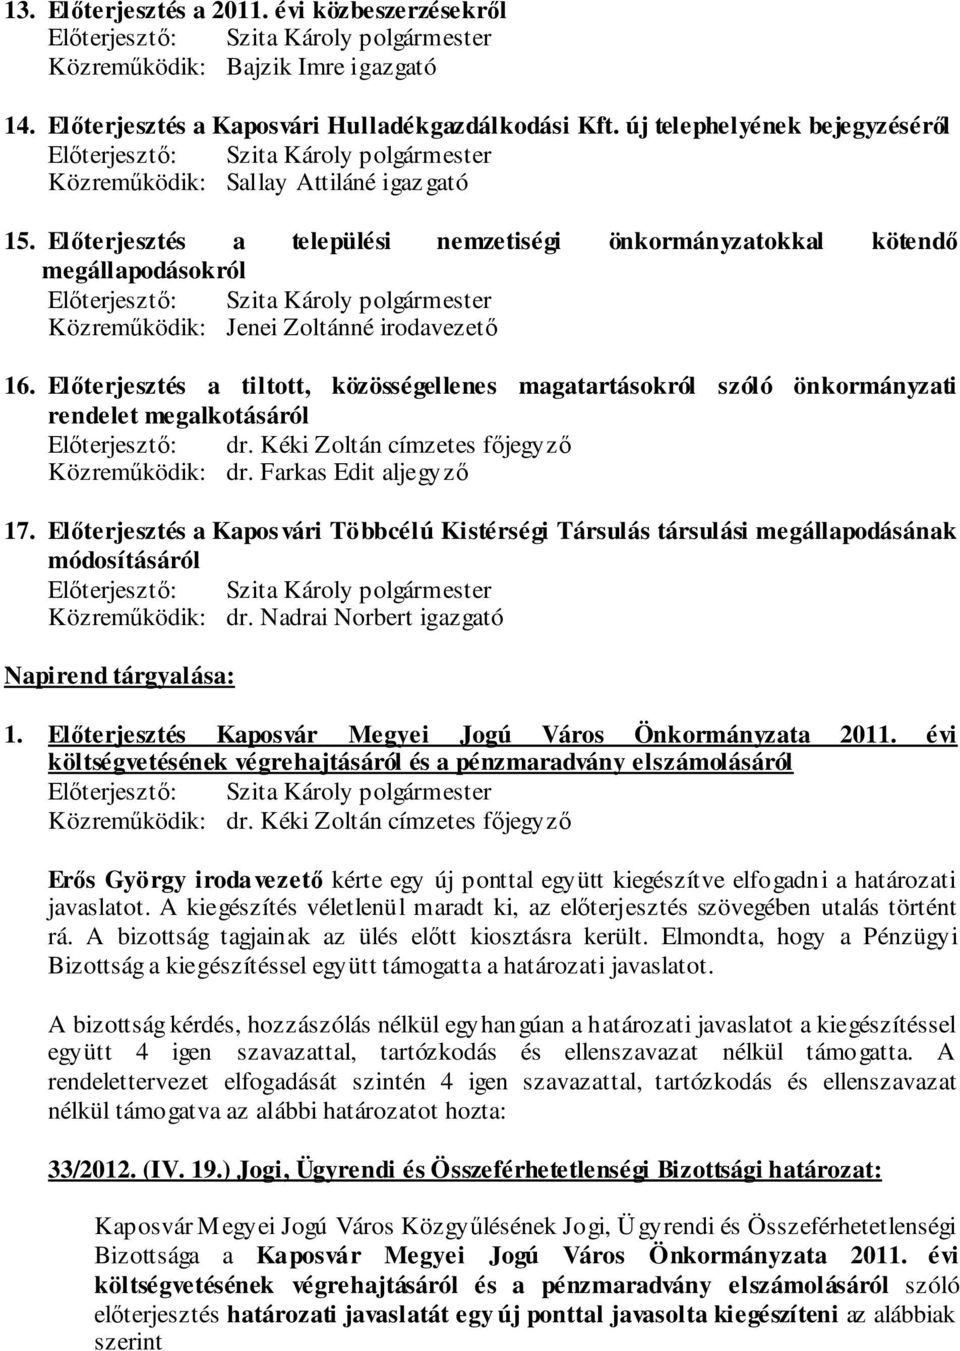 Előterjesztés a települési nemzetiségi önkormányzatokkal kötendő megállapodásokról Közreműködik: Jenei Zoltánné irodavezető 16.